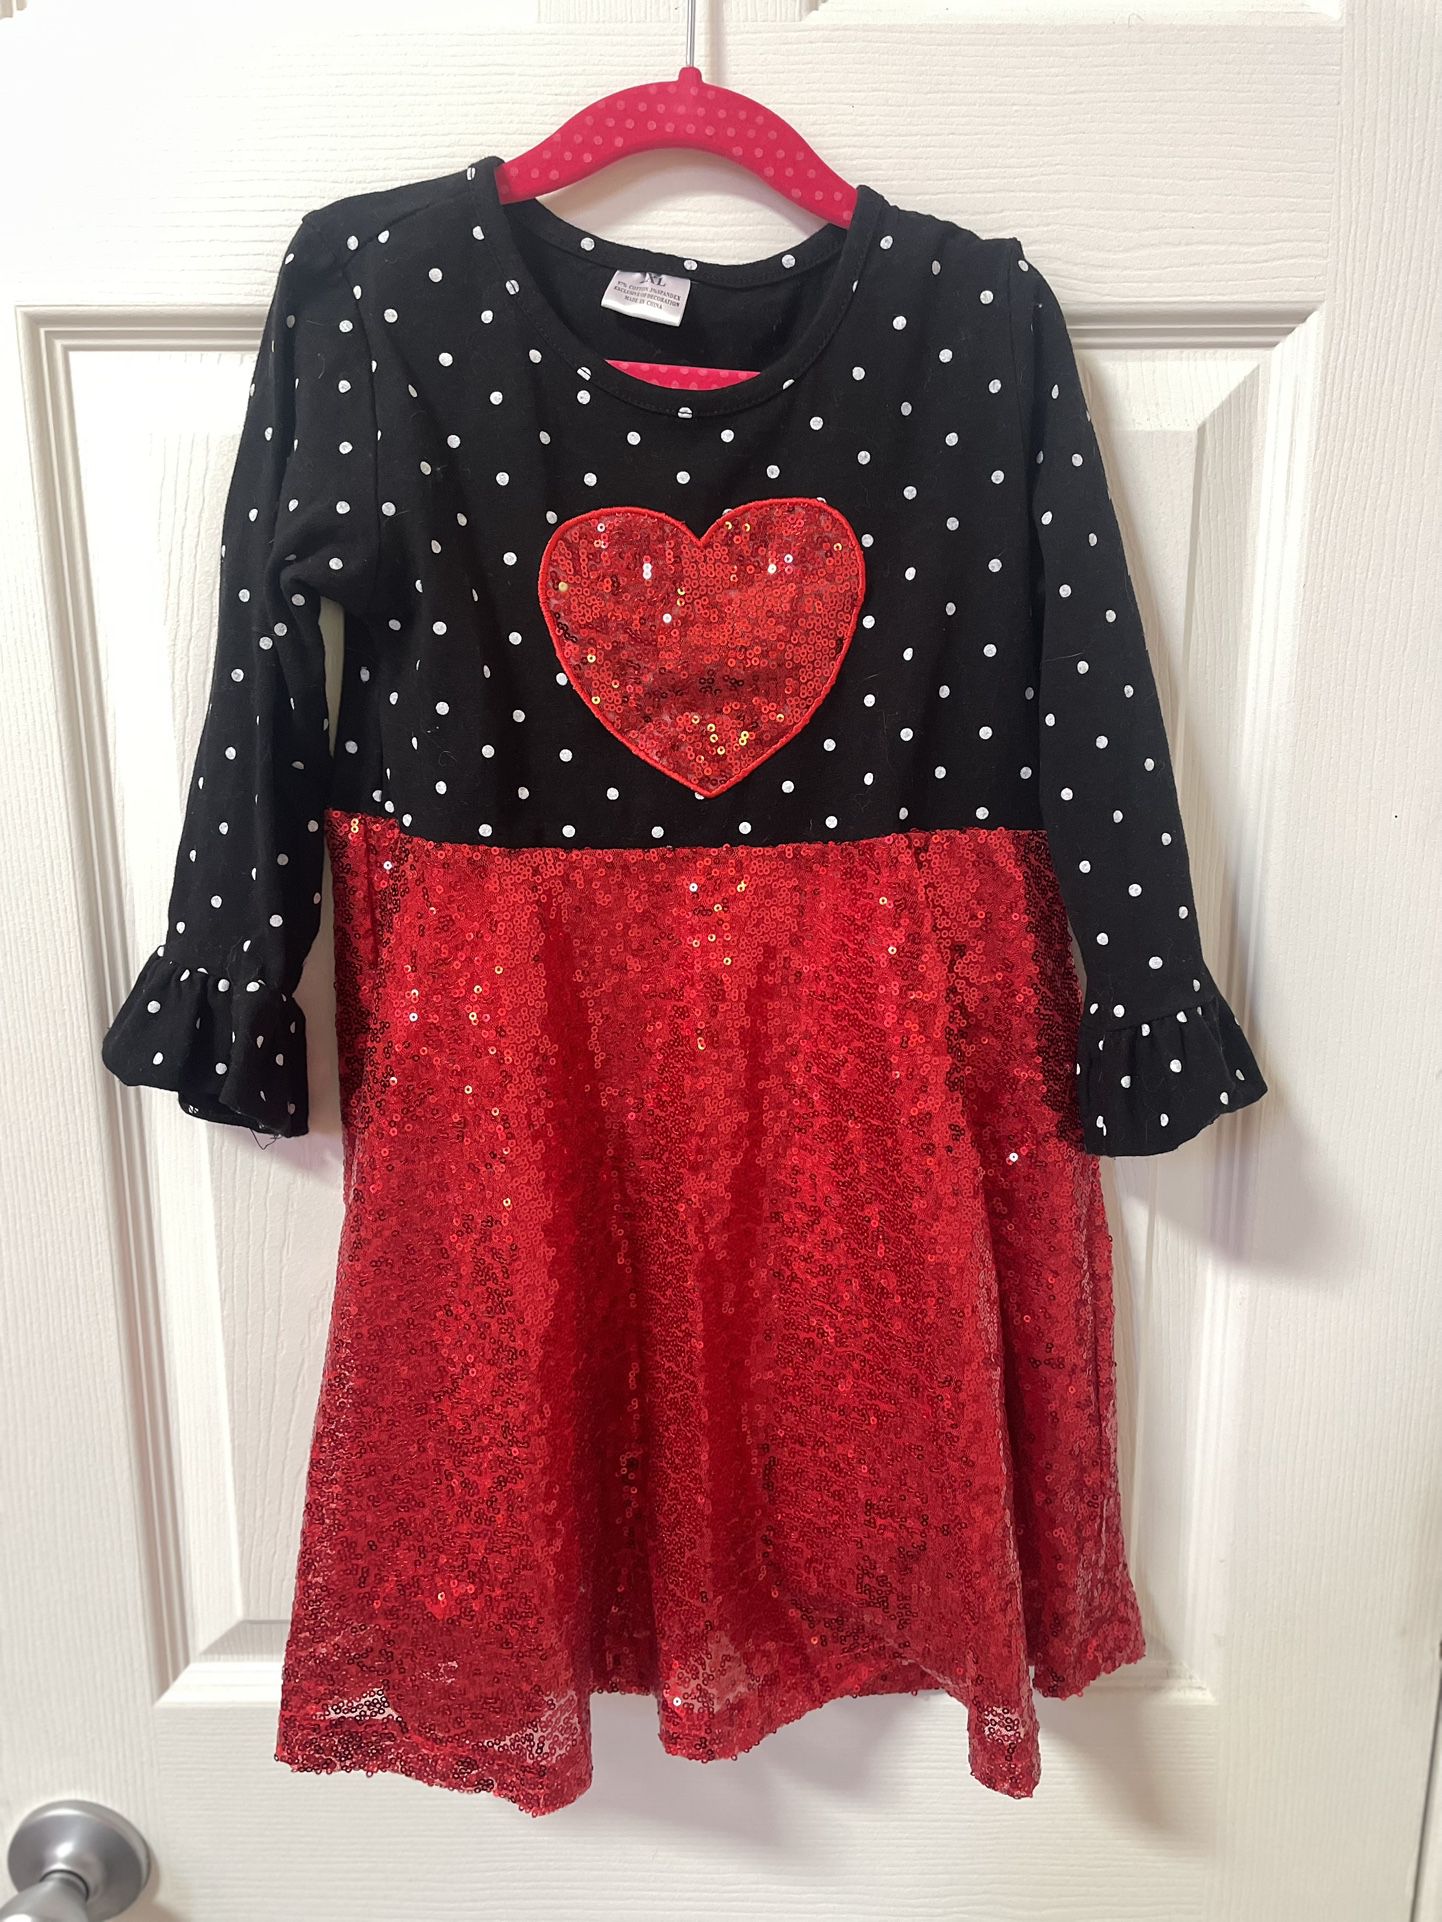 Sequin Heart Dress - Girls Size 7/8